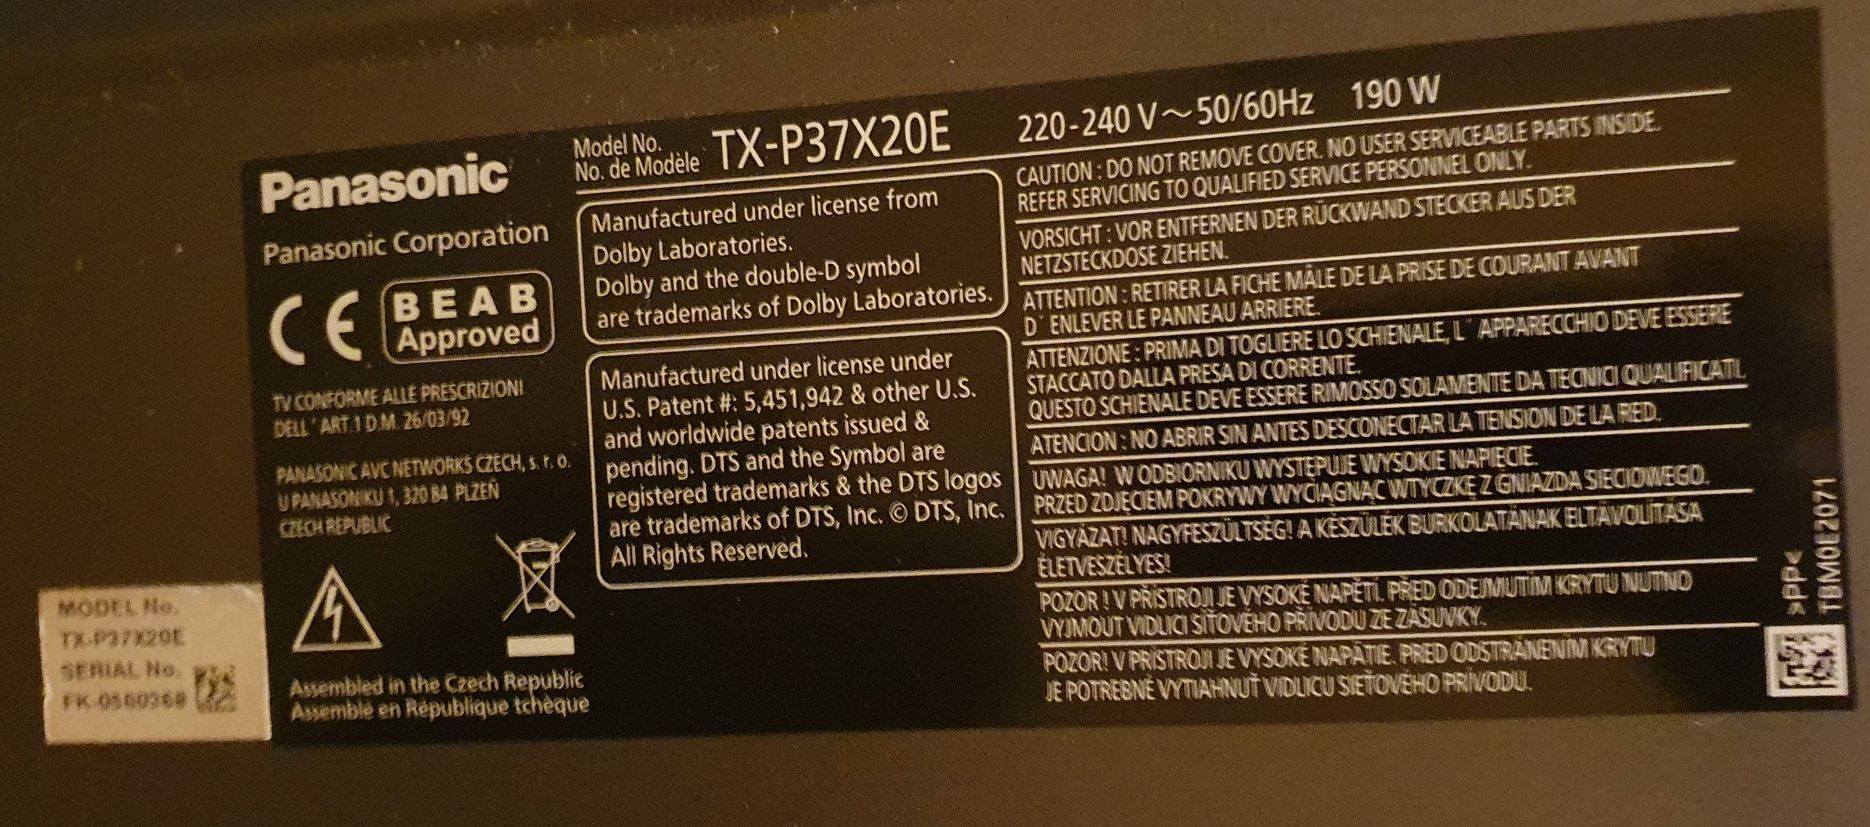 telewizor Panasonic model: TX-P37X20E.